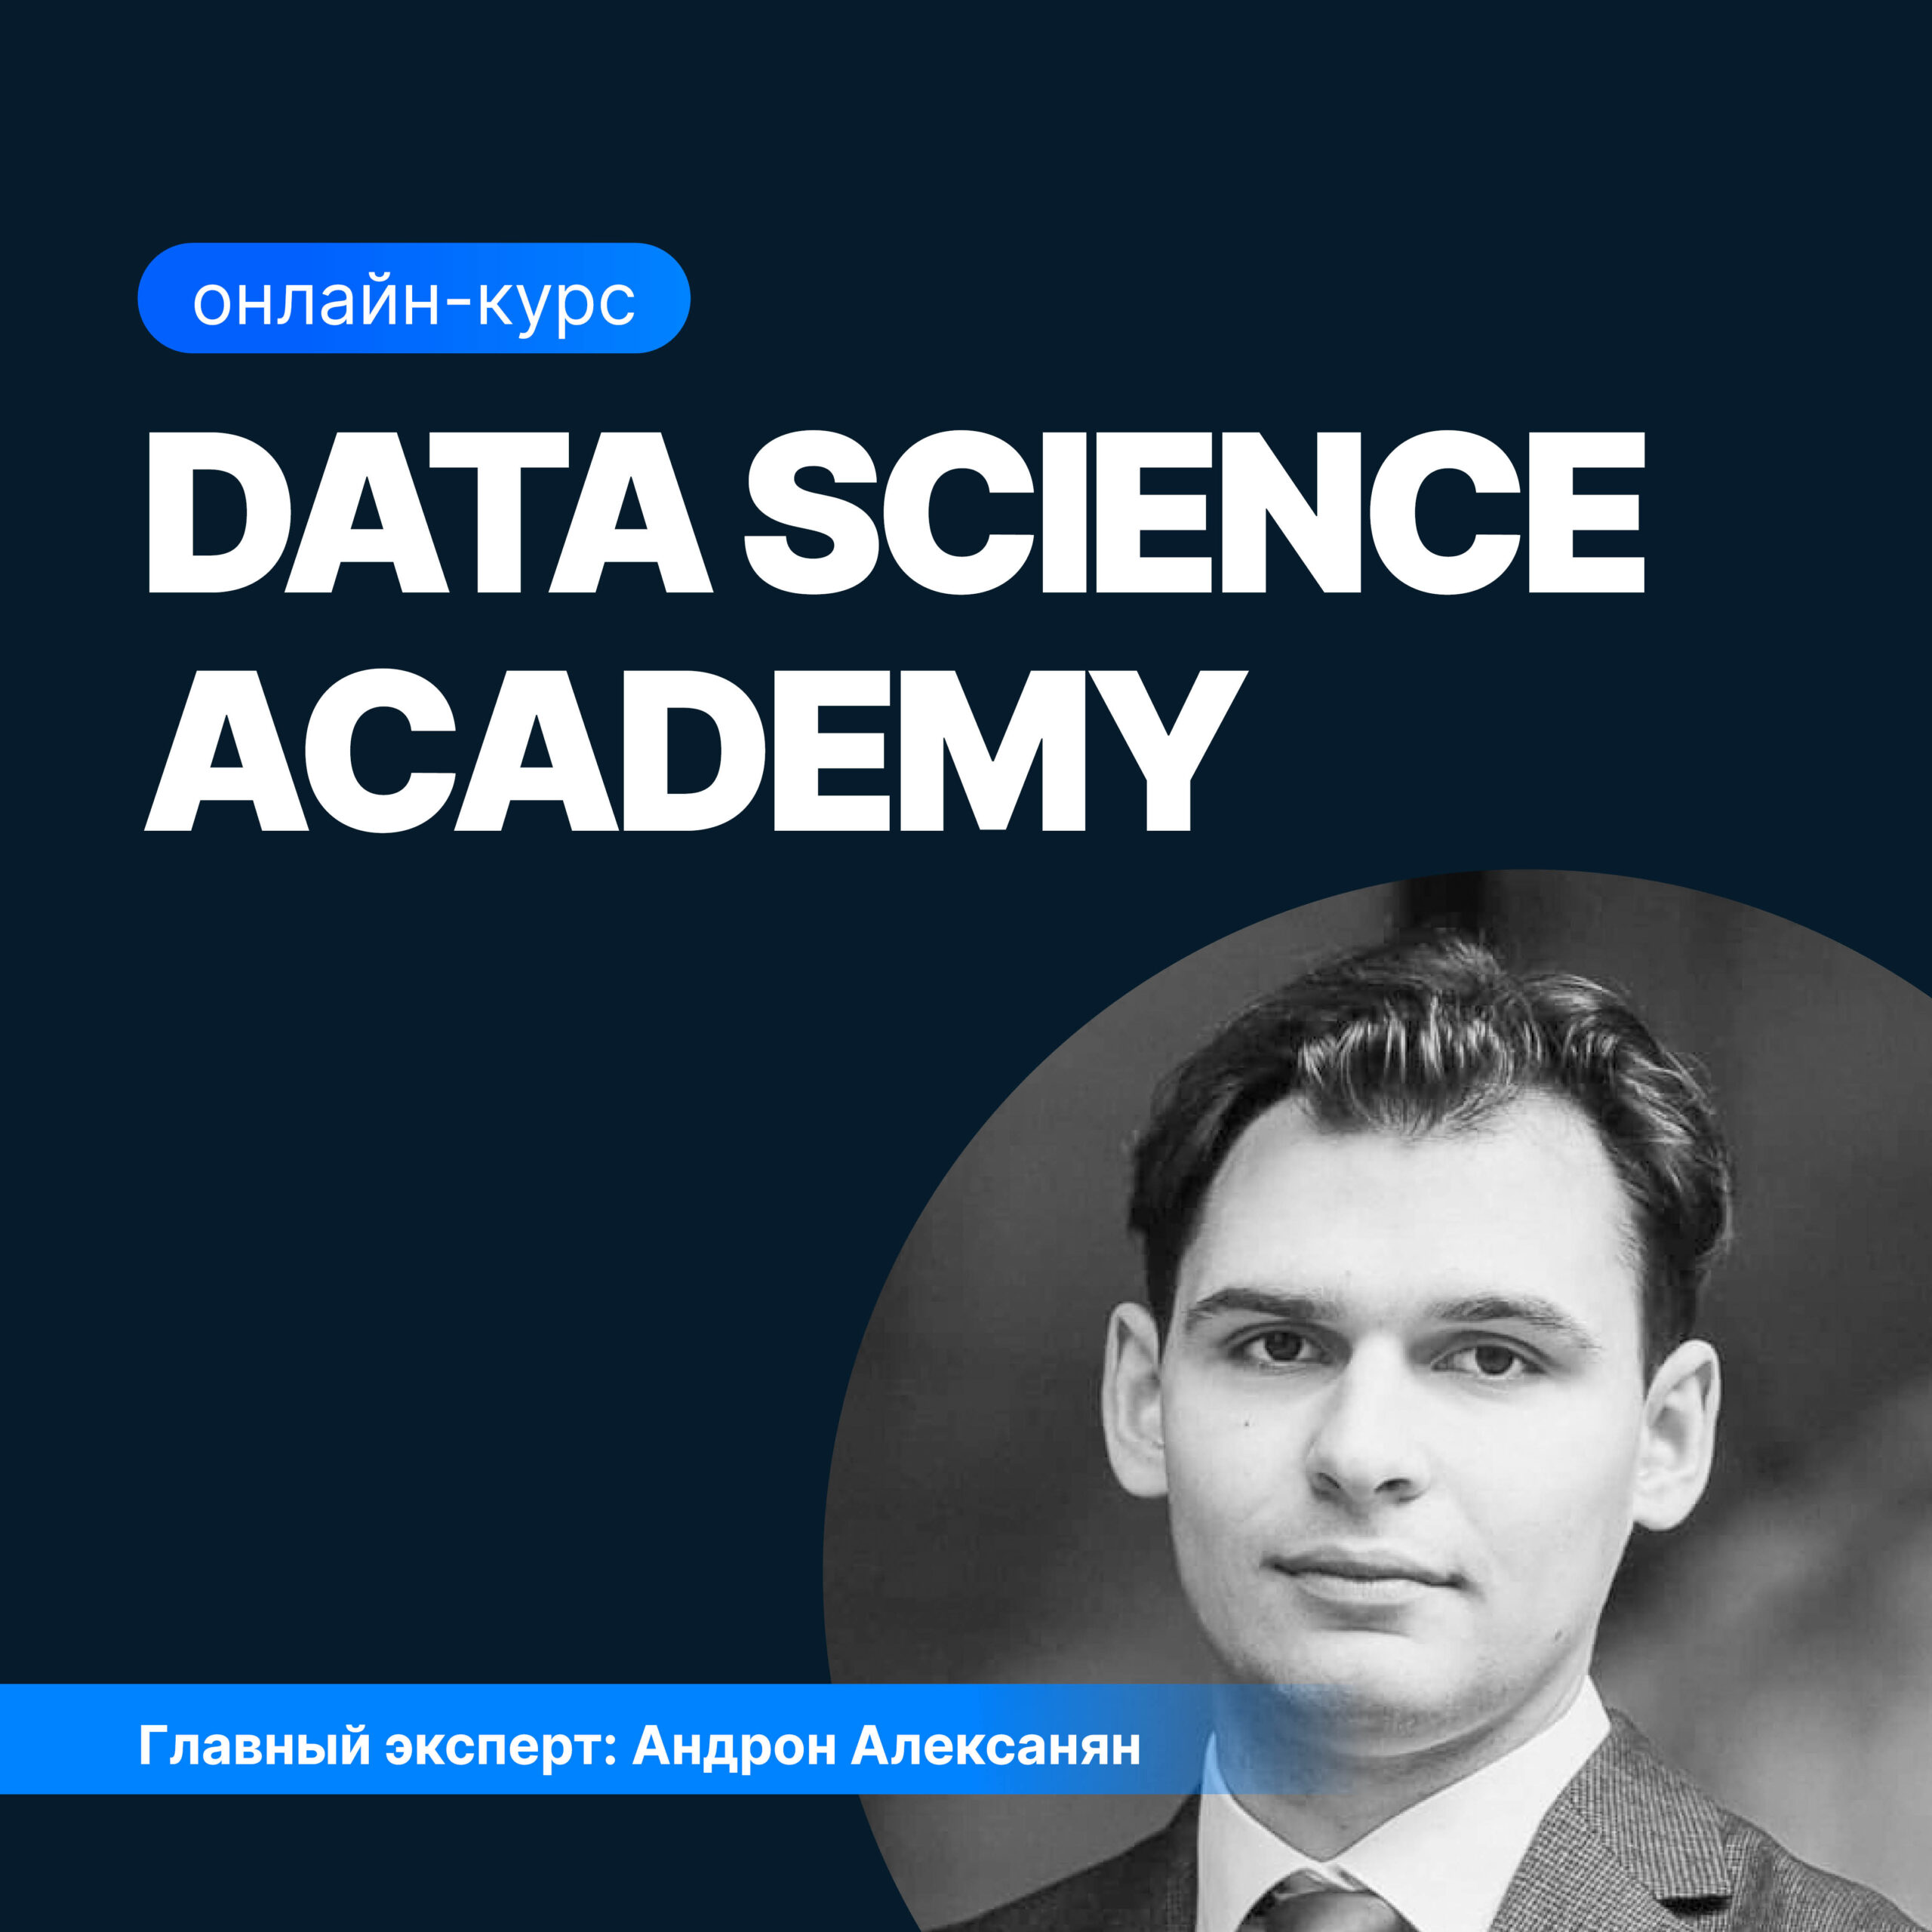 Основы Data Science